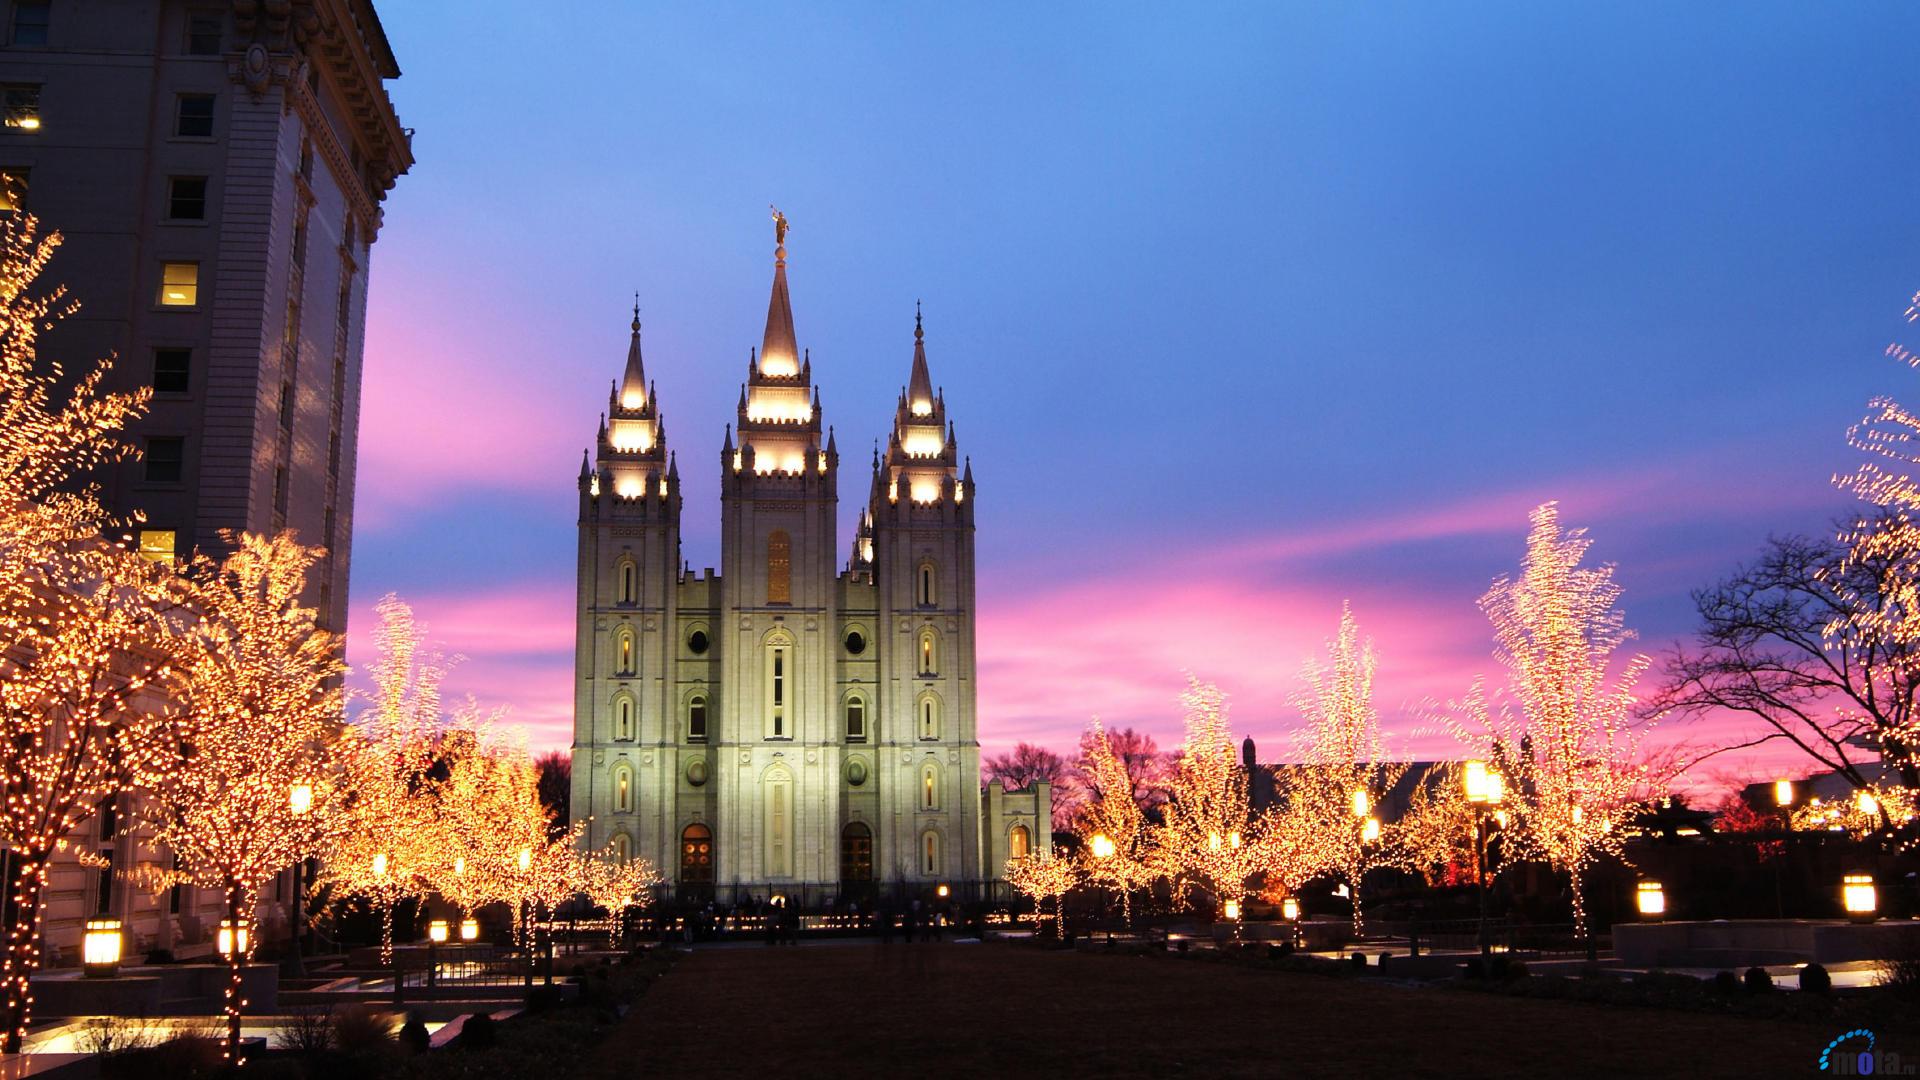  Download wallpaper Mormon Temple at Christmas Salt Lake City Utah 1920x1080